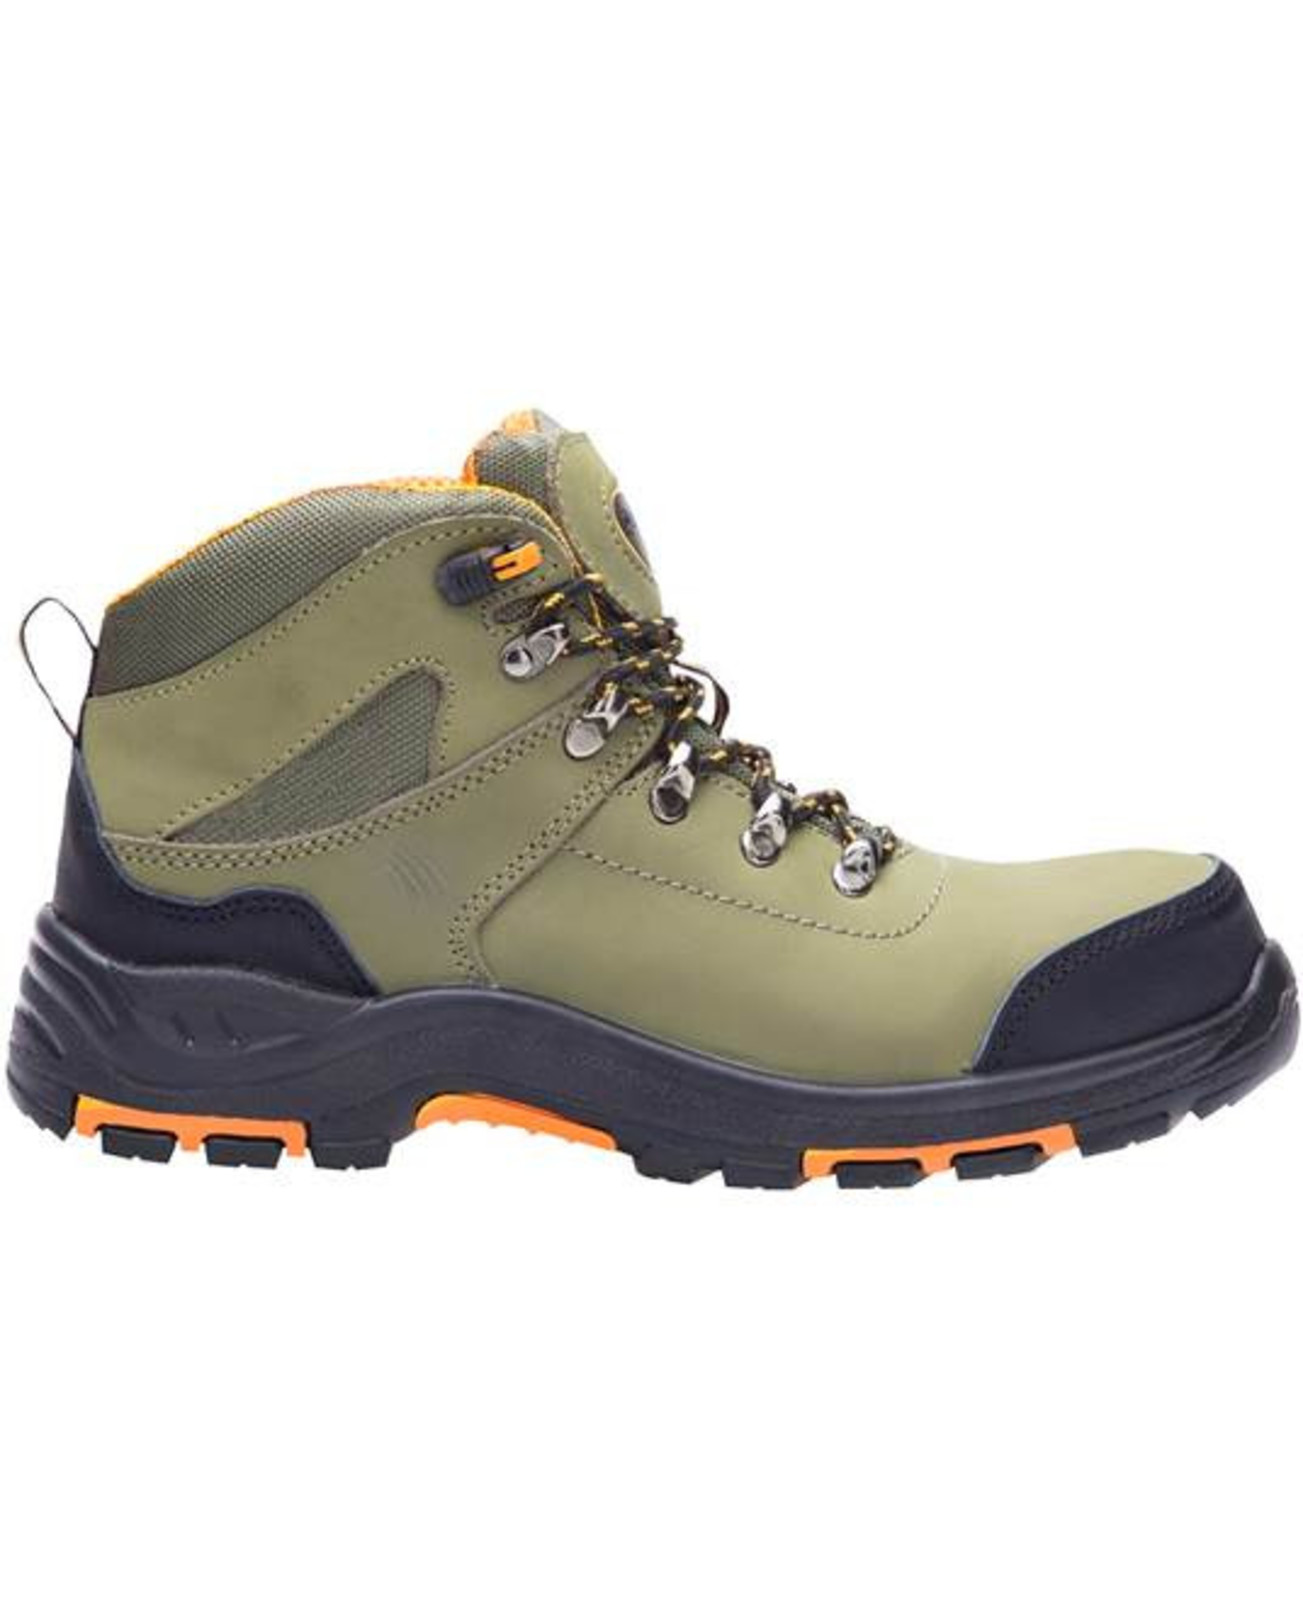 Bezpečnostná členková obuv Ardon Grinder S3 FO HRO SRC - veľkosť: 45, farba: khaki/oranžová